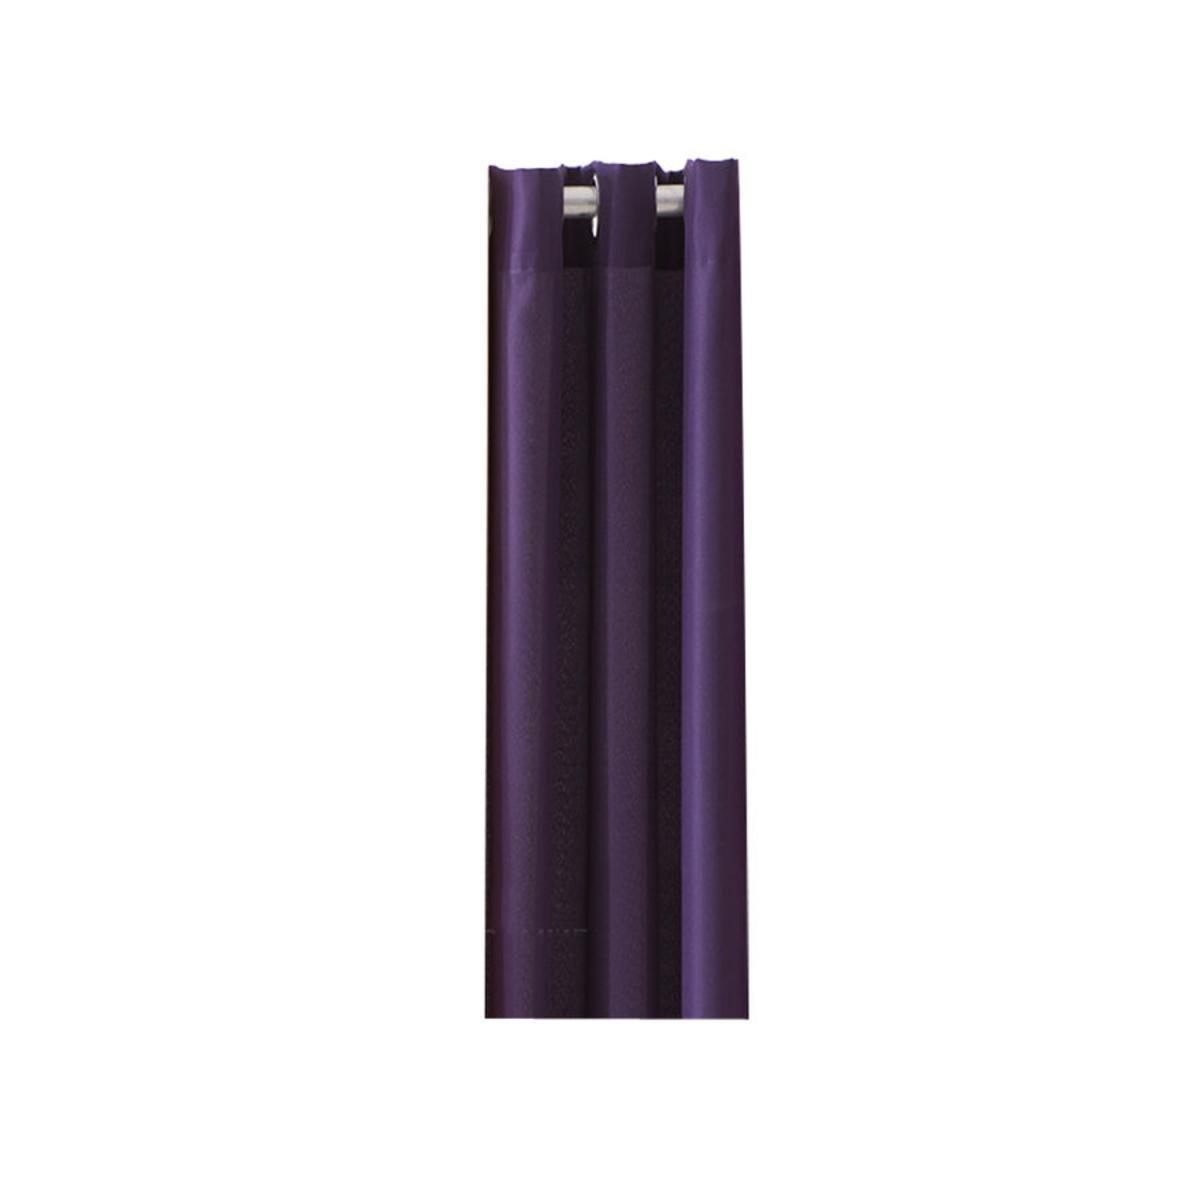 Rideau en polyester - 140 x 260 cm - Violet